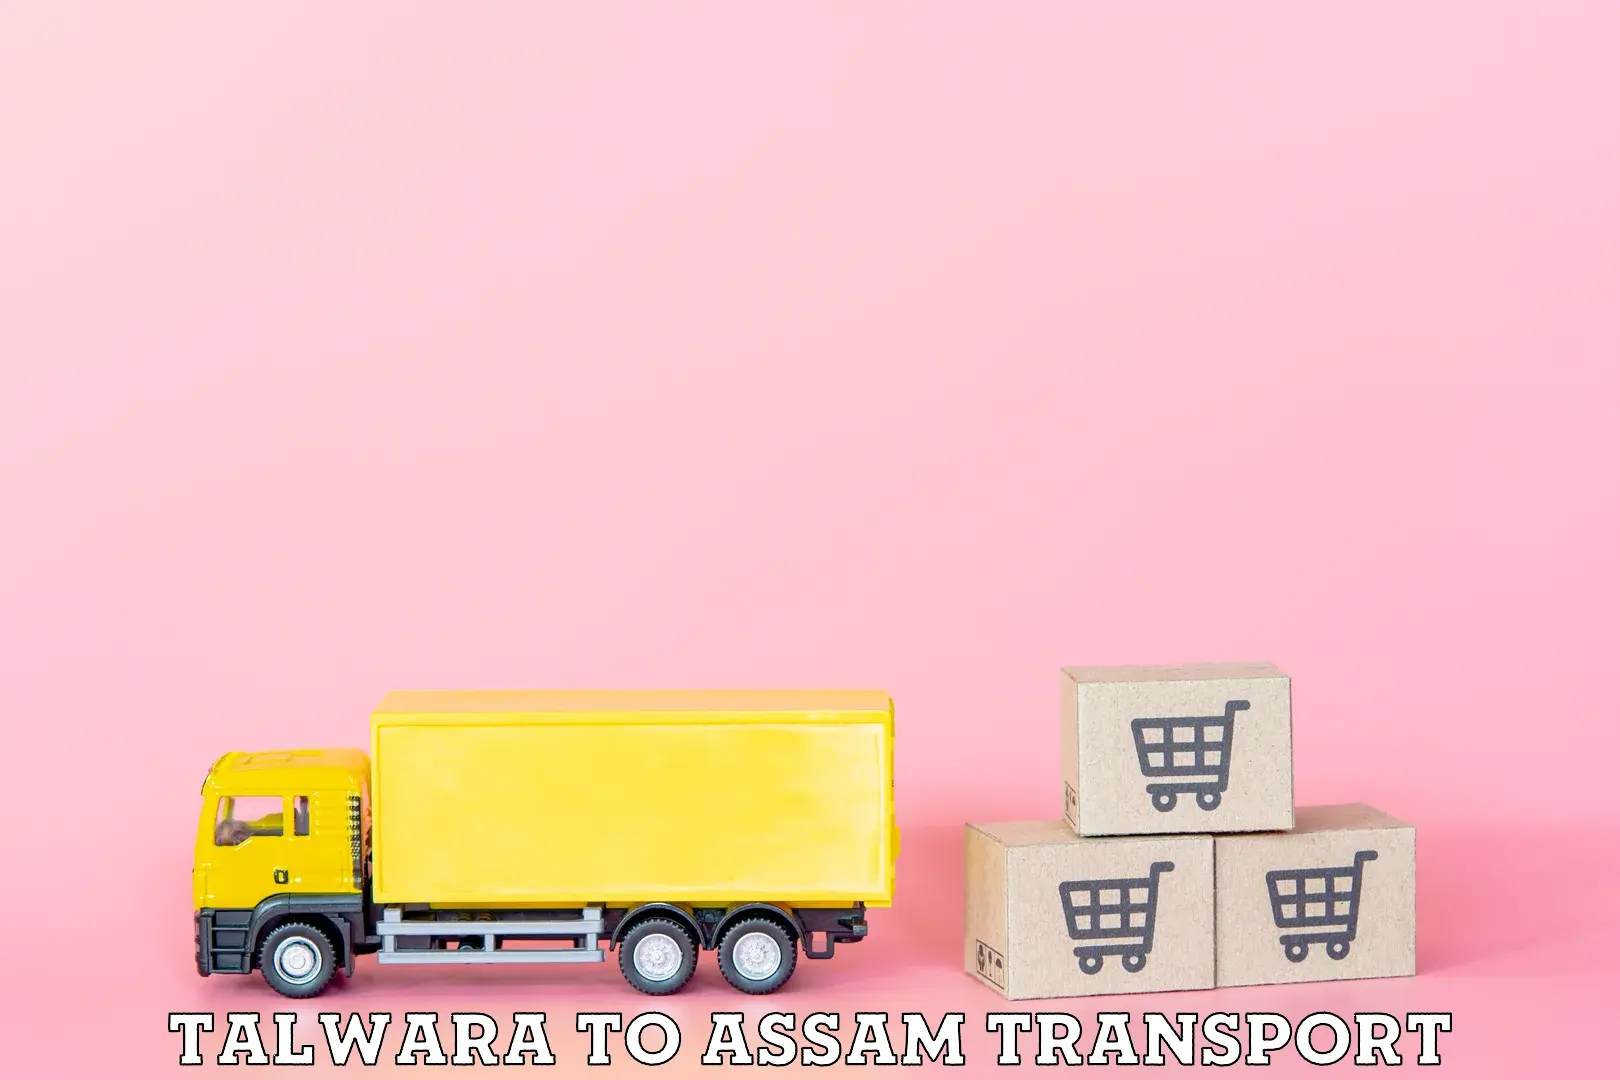 Container transport service Talwara to Kabuganj